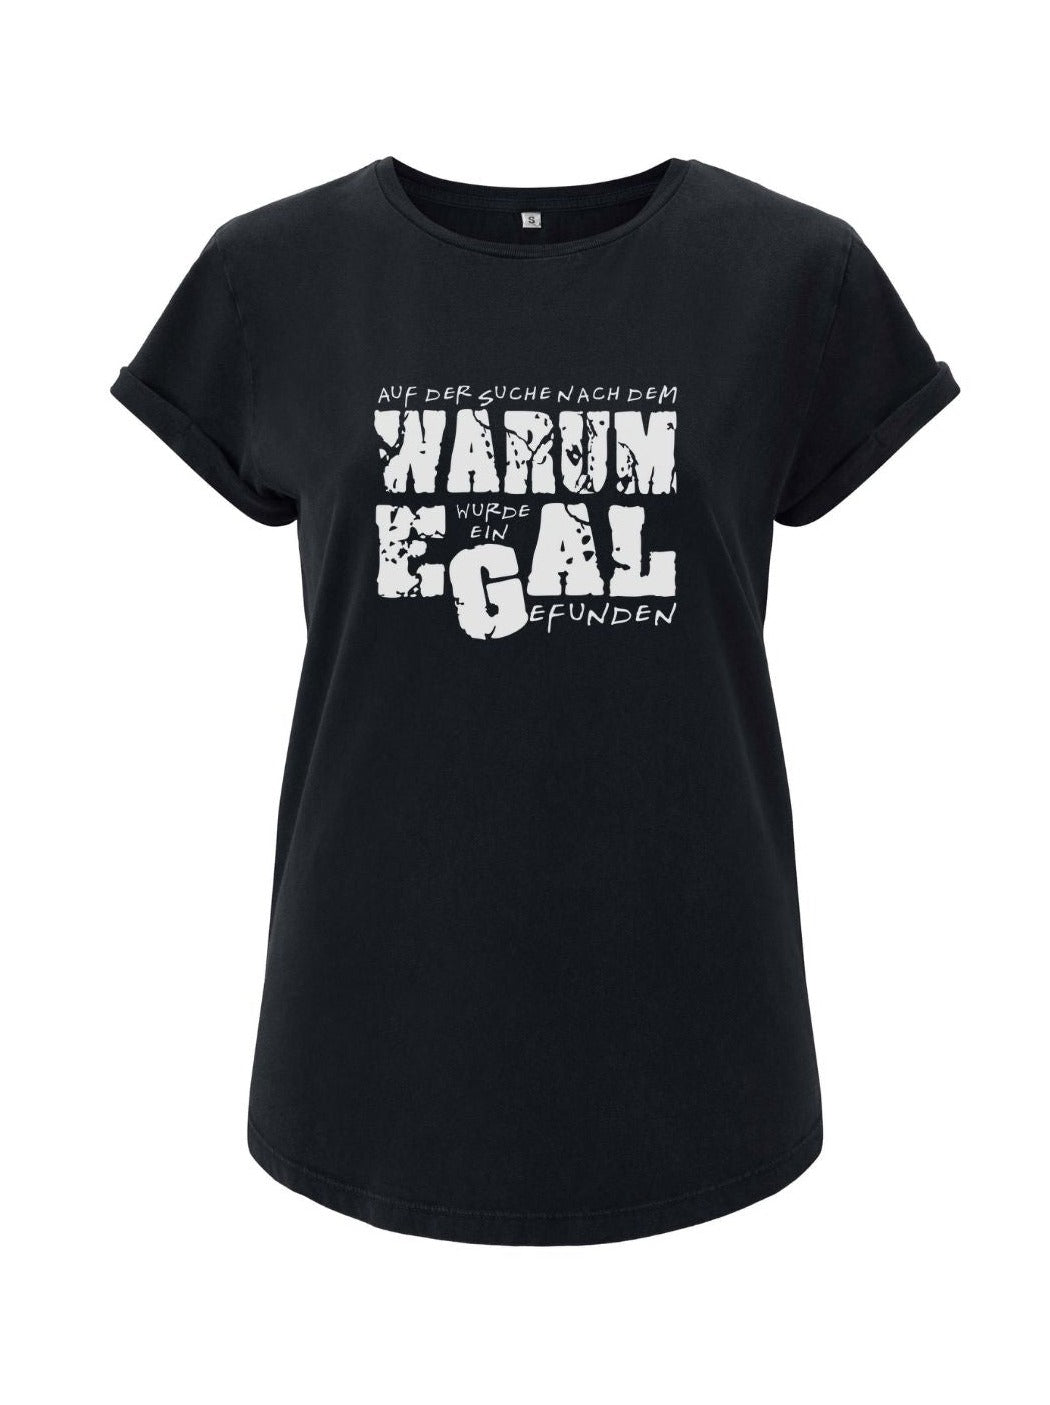 Damen T-shirt WARUM EGAL rolled arms schwarz